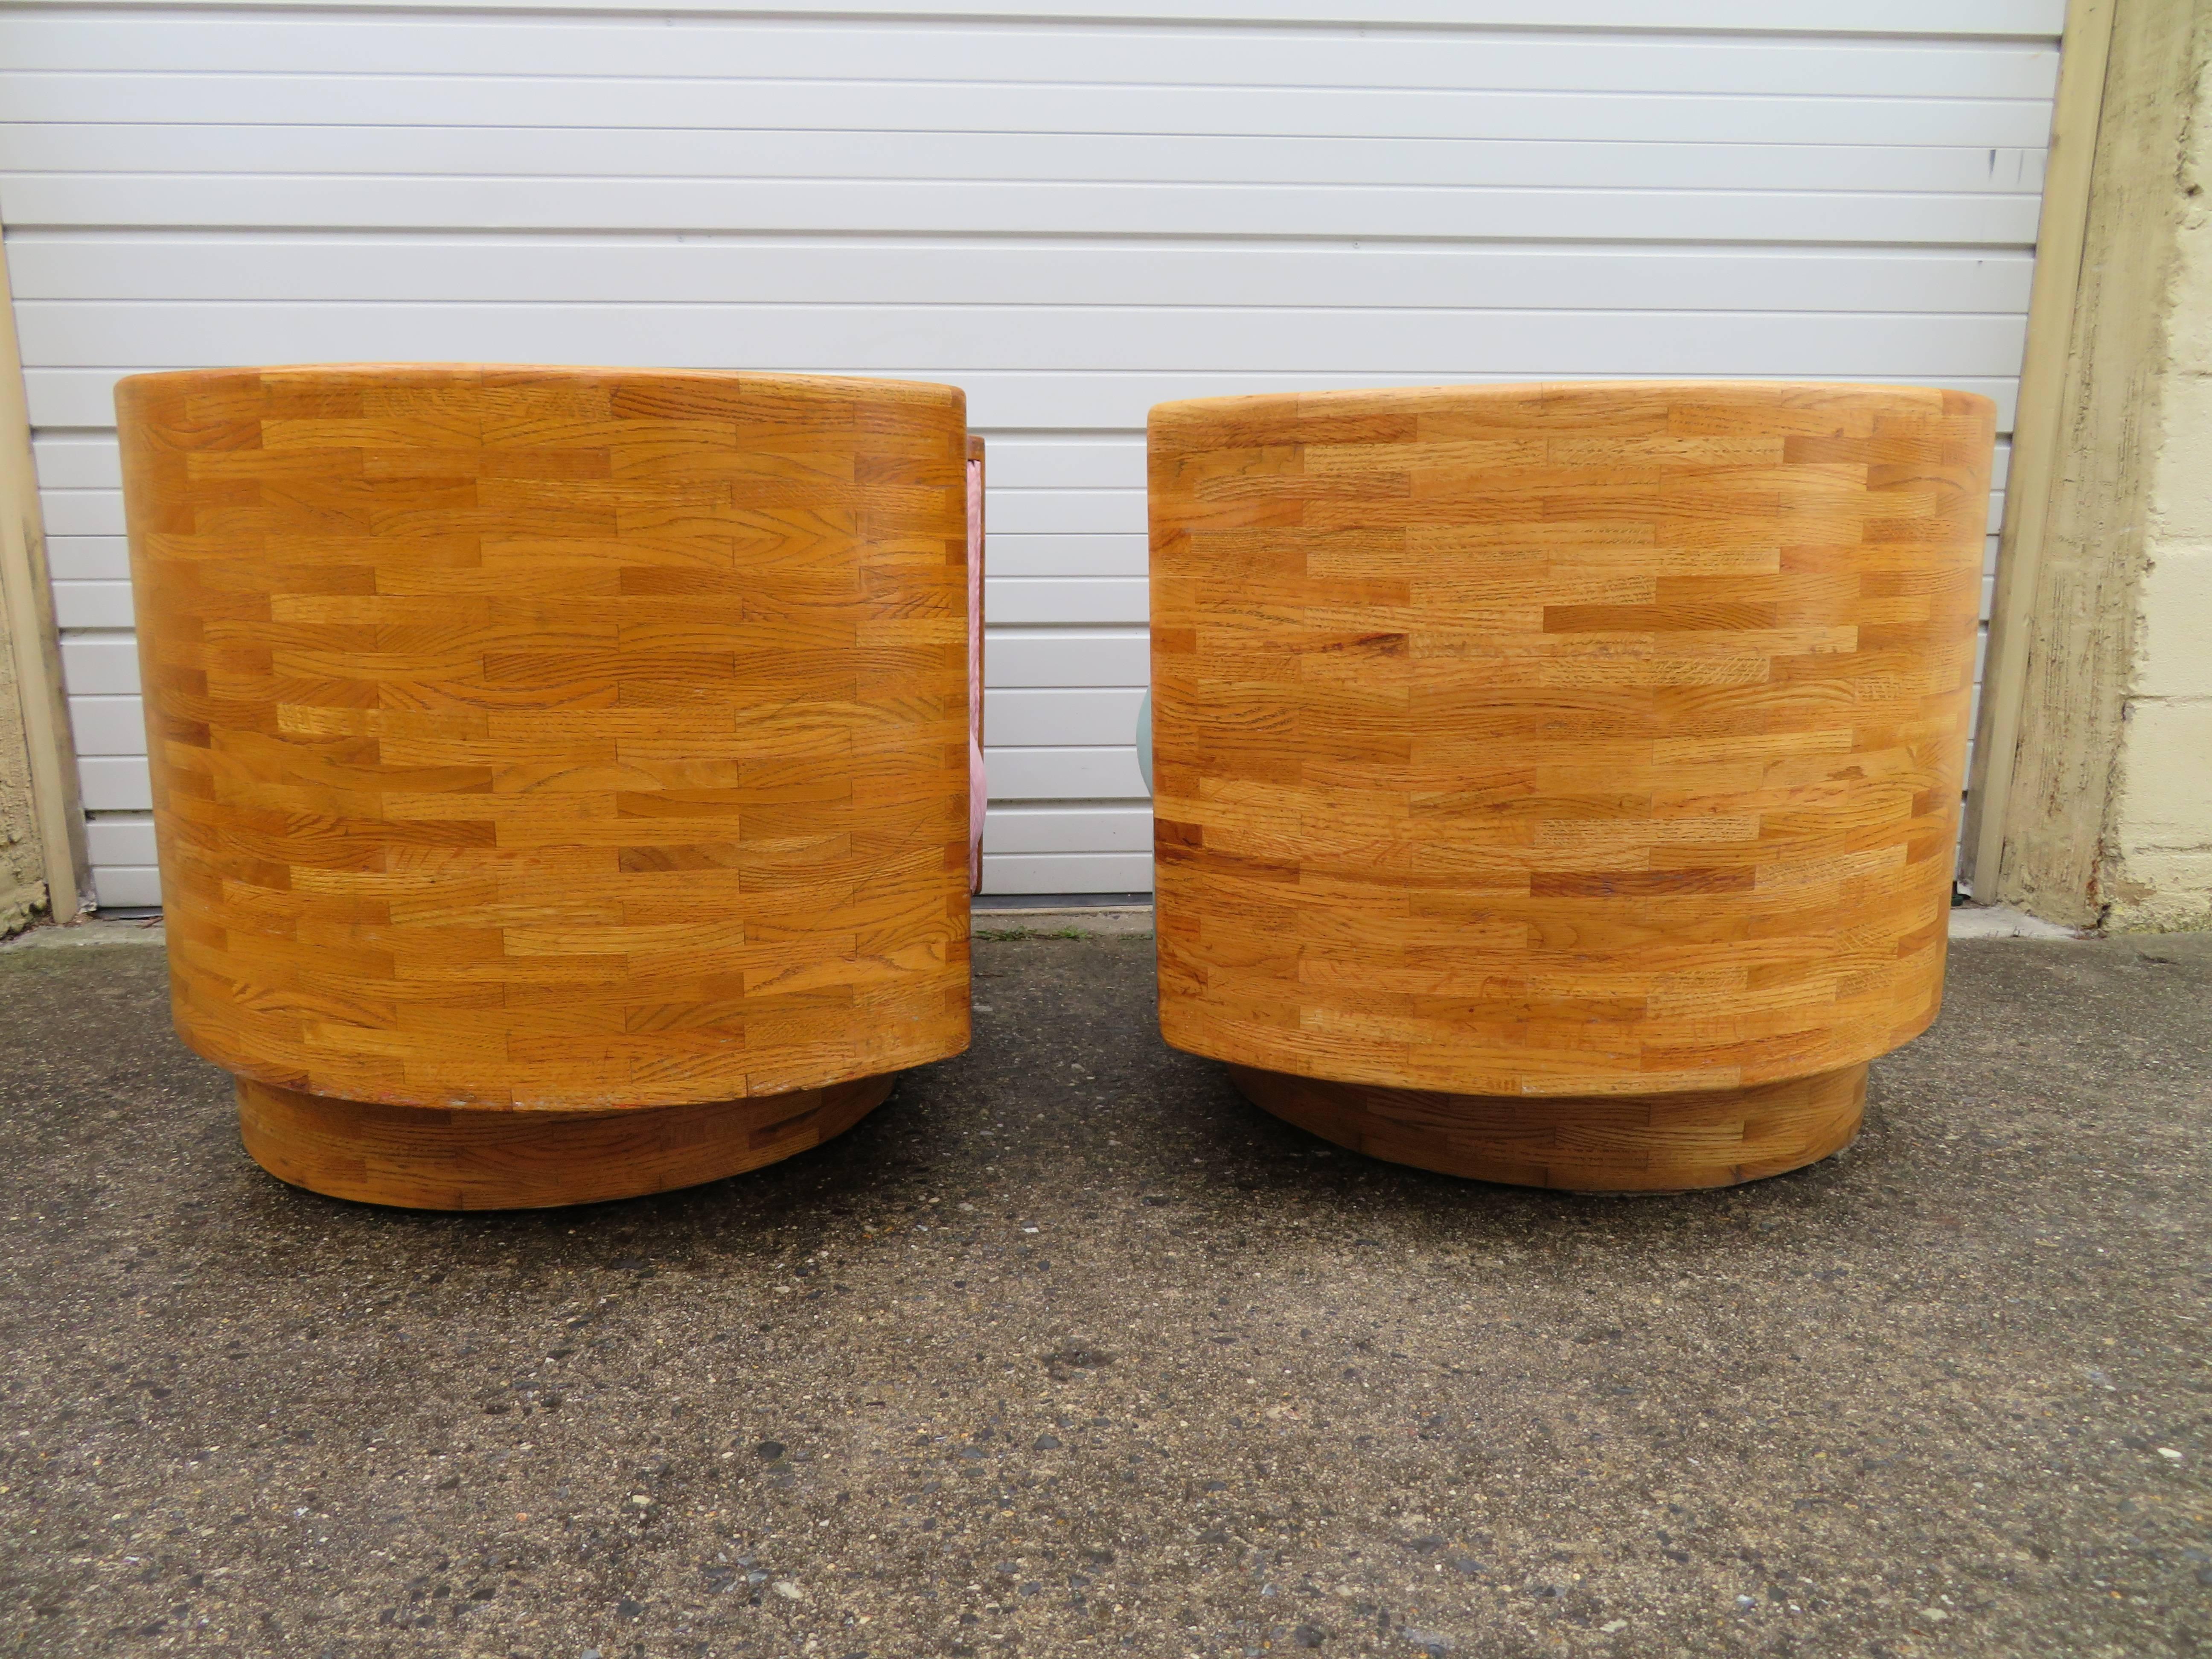 Ungewöhnliches und seltenes Paar Drehstühle im Stil von Milo Baughman mit Fassrücken. Dies ist das erste Paar dieser Massivholzstühle, das wir je gesehen haben. Diese Stühle sind wie ein Tisch aus massivem Ahornholz gefertigt, sehr breit und schwer.